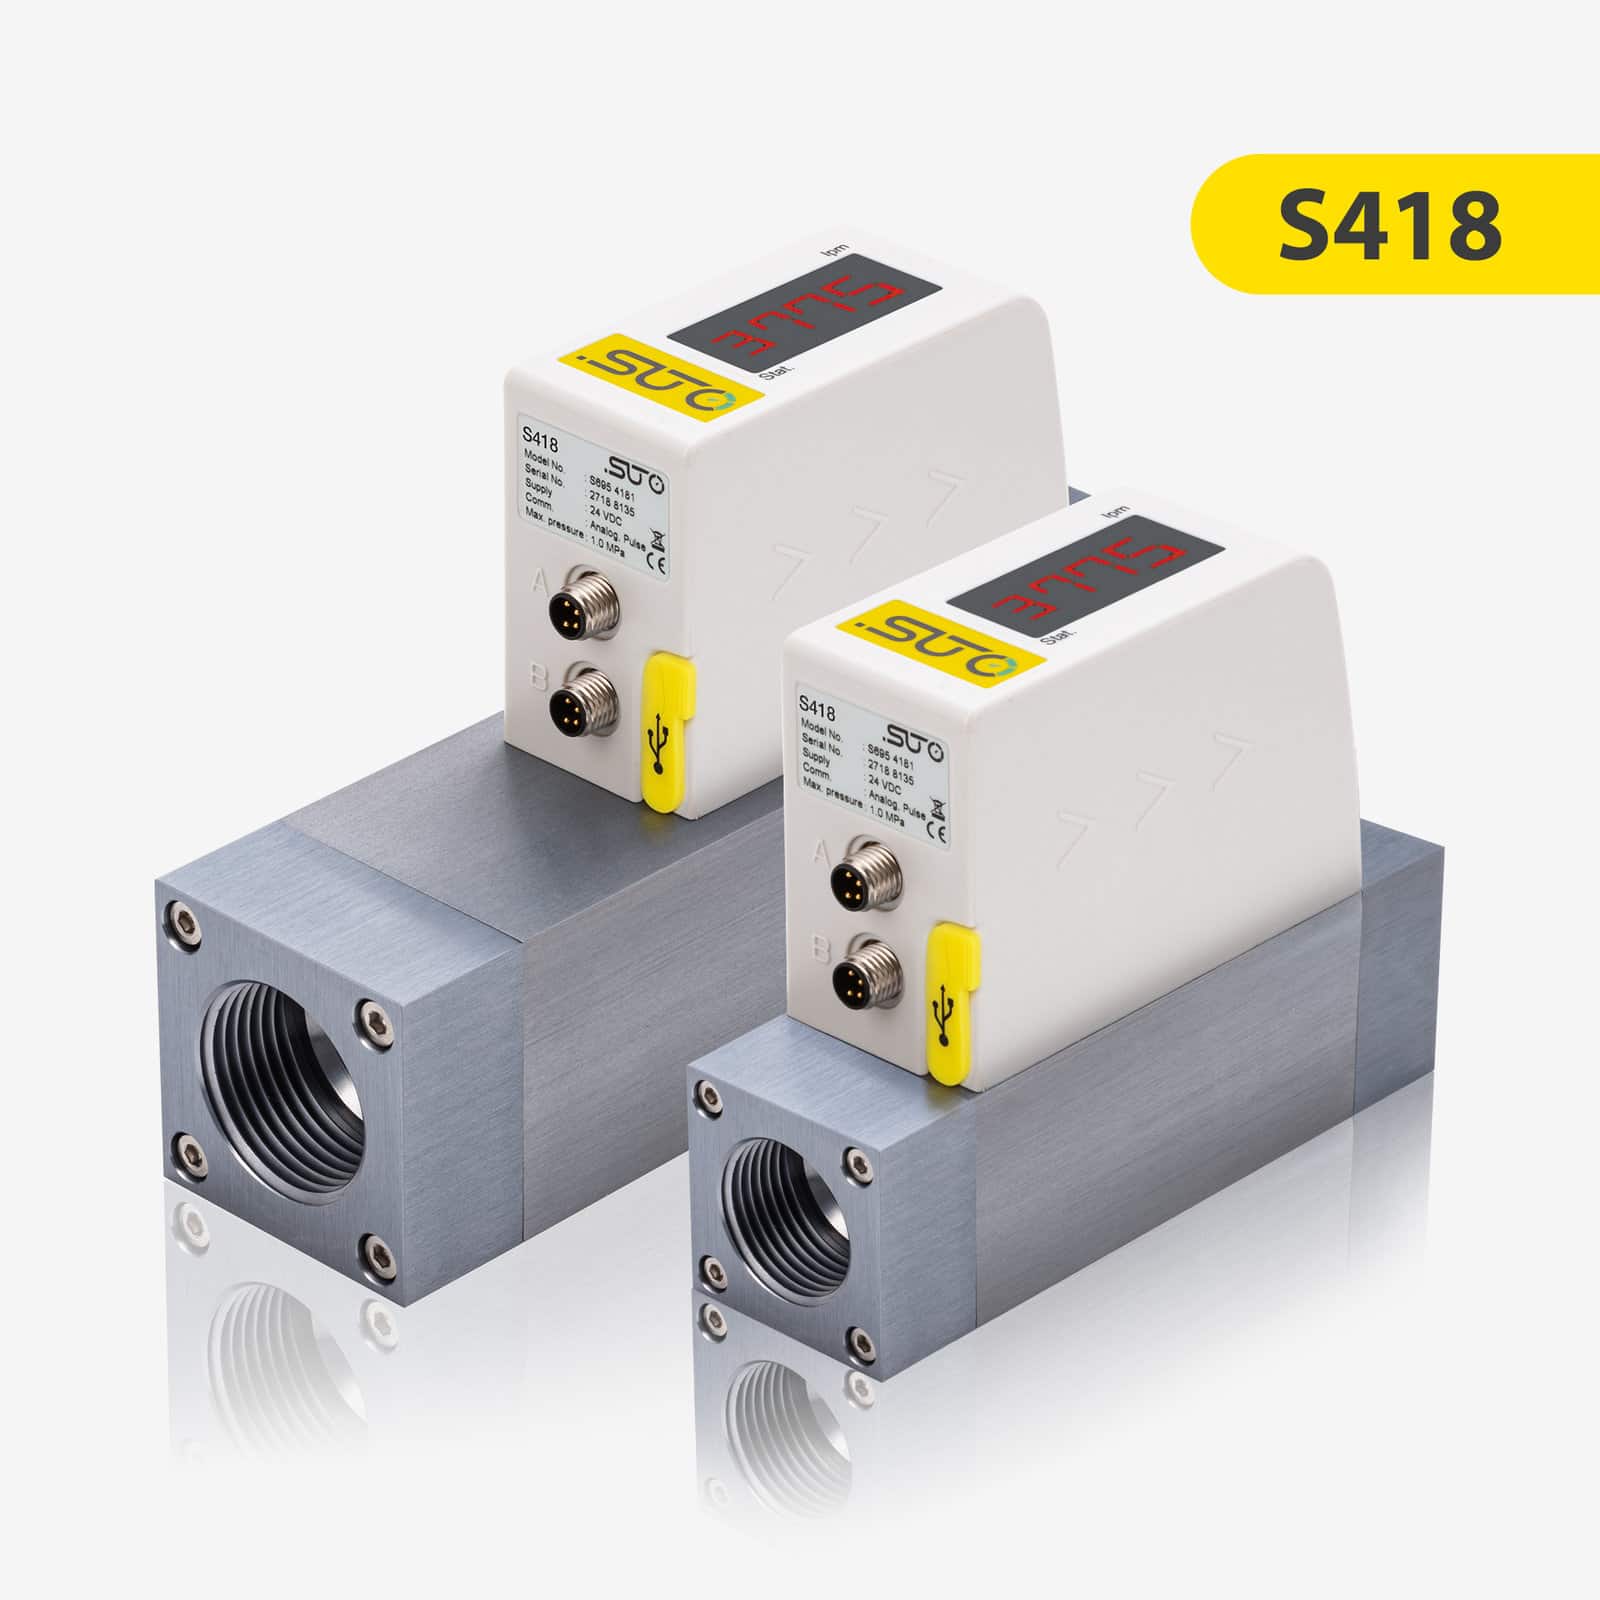 S418 Kompakter Durchflusssensor für Druckluft und Gase (Pro-Inline)